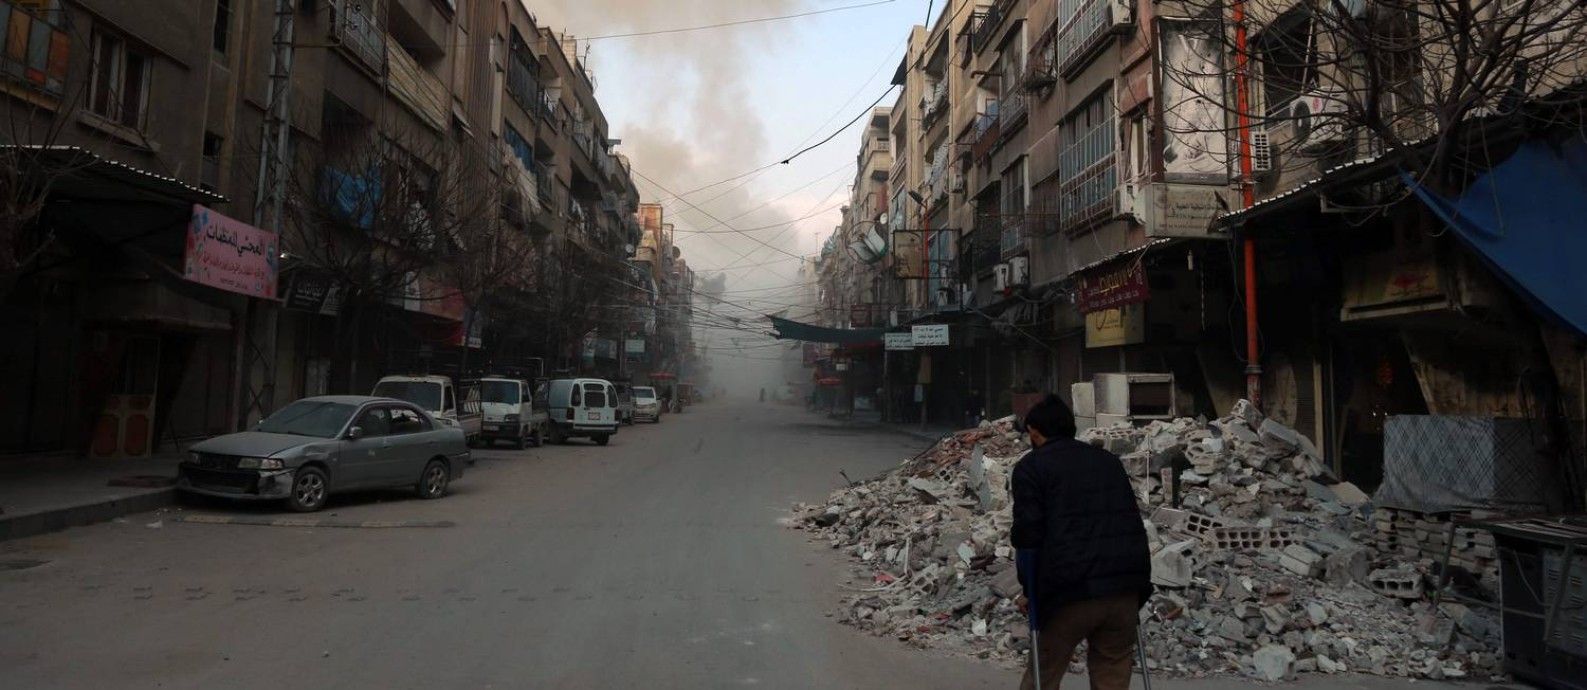 Sírio caminha em uma rua de Douma, cidade em Ghouta Oriental, sob o cerco do regime: “A noção de guerra justa supõe que haja guerras injustas, mas quem decide o que é excessivo?”, observa Rony Brauman Foto: HAMZA AL-AJWEH / AFP